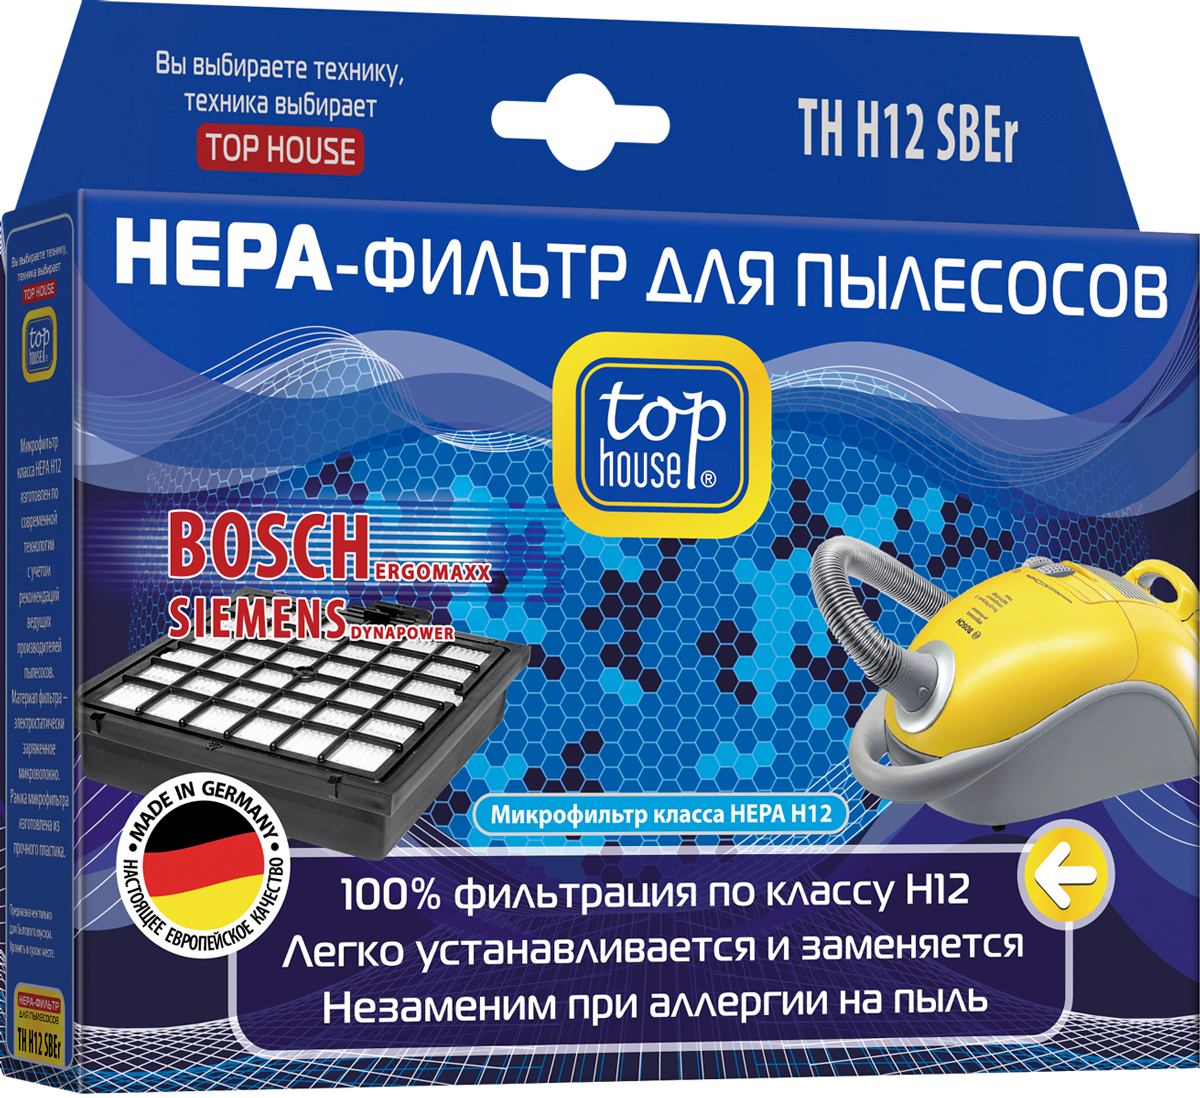 Top House TH H12 SBEr HEPA-фильтр для пылесосов Siemens/Bosch